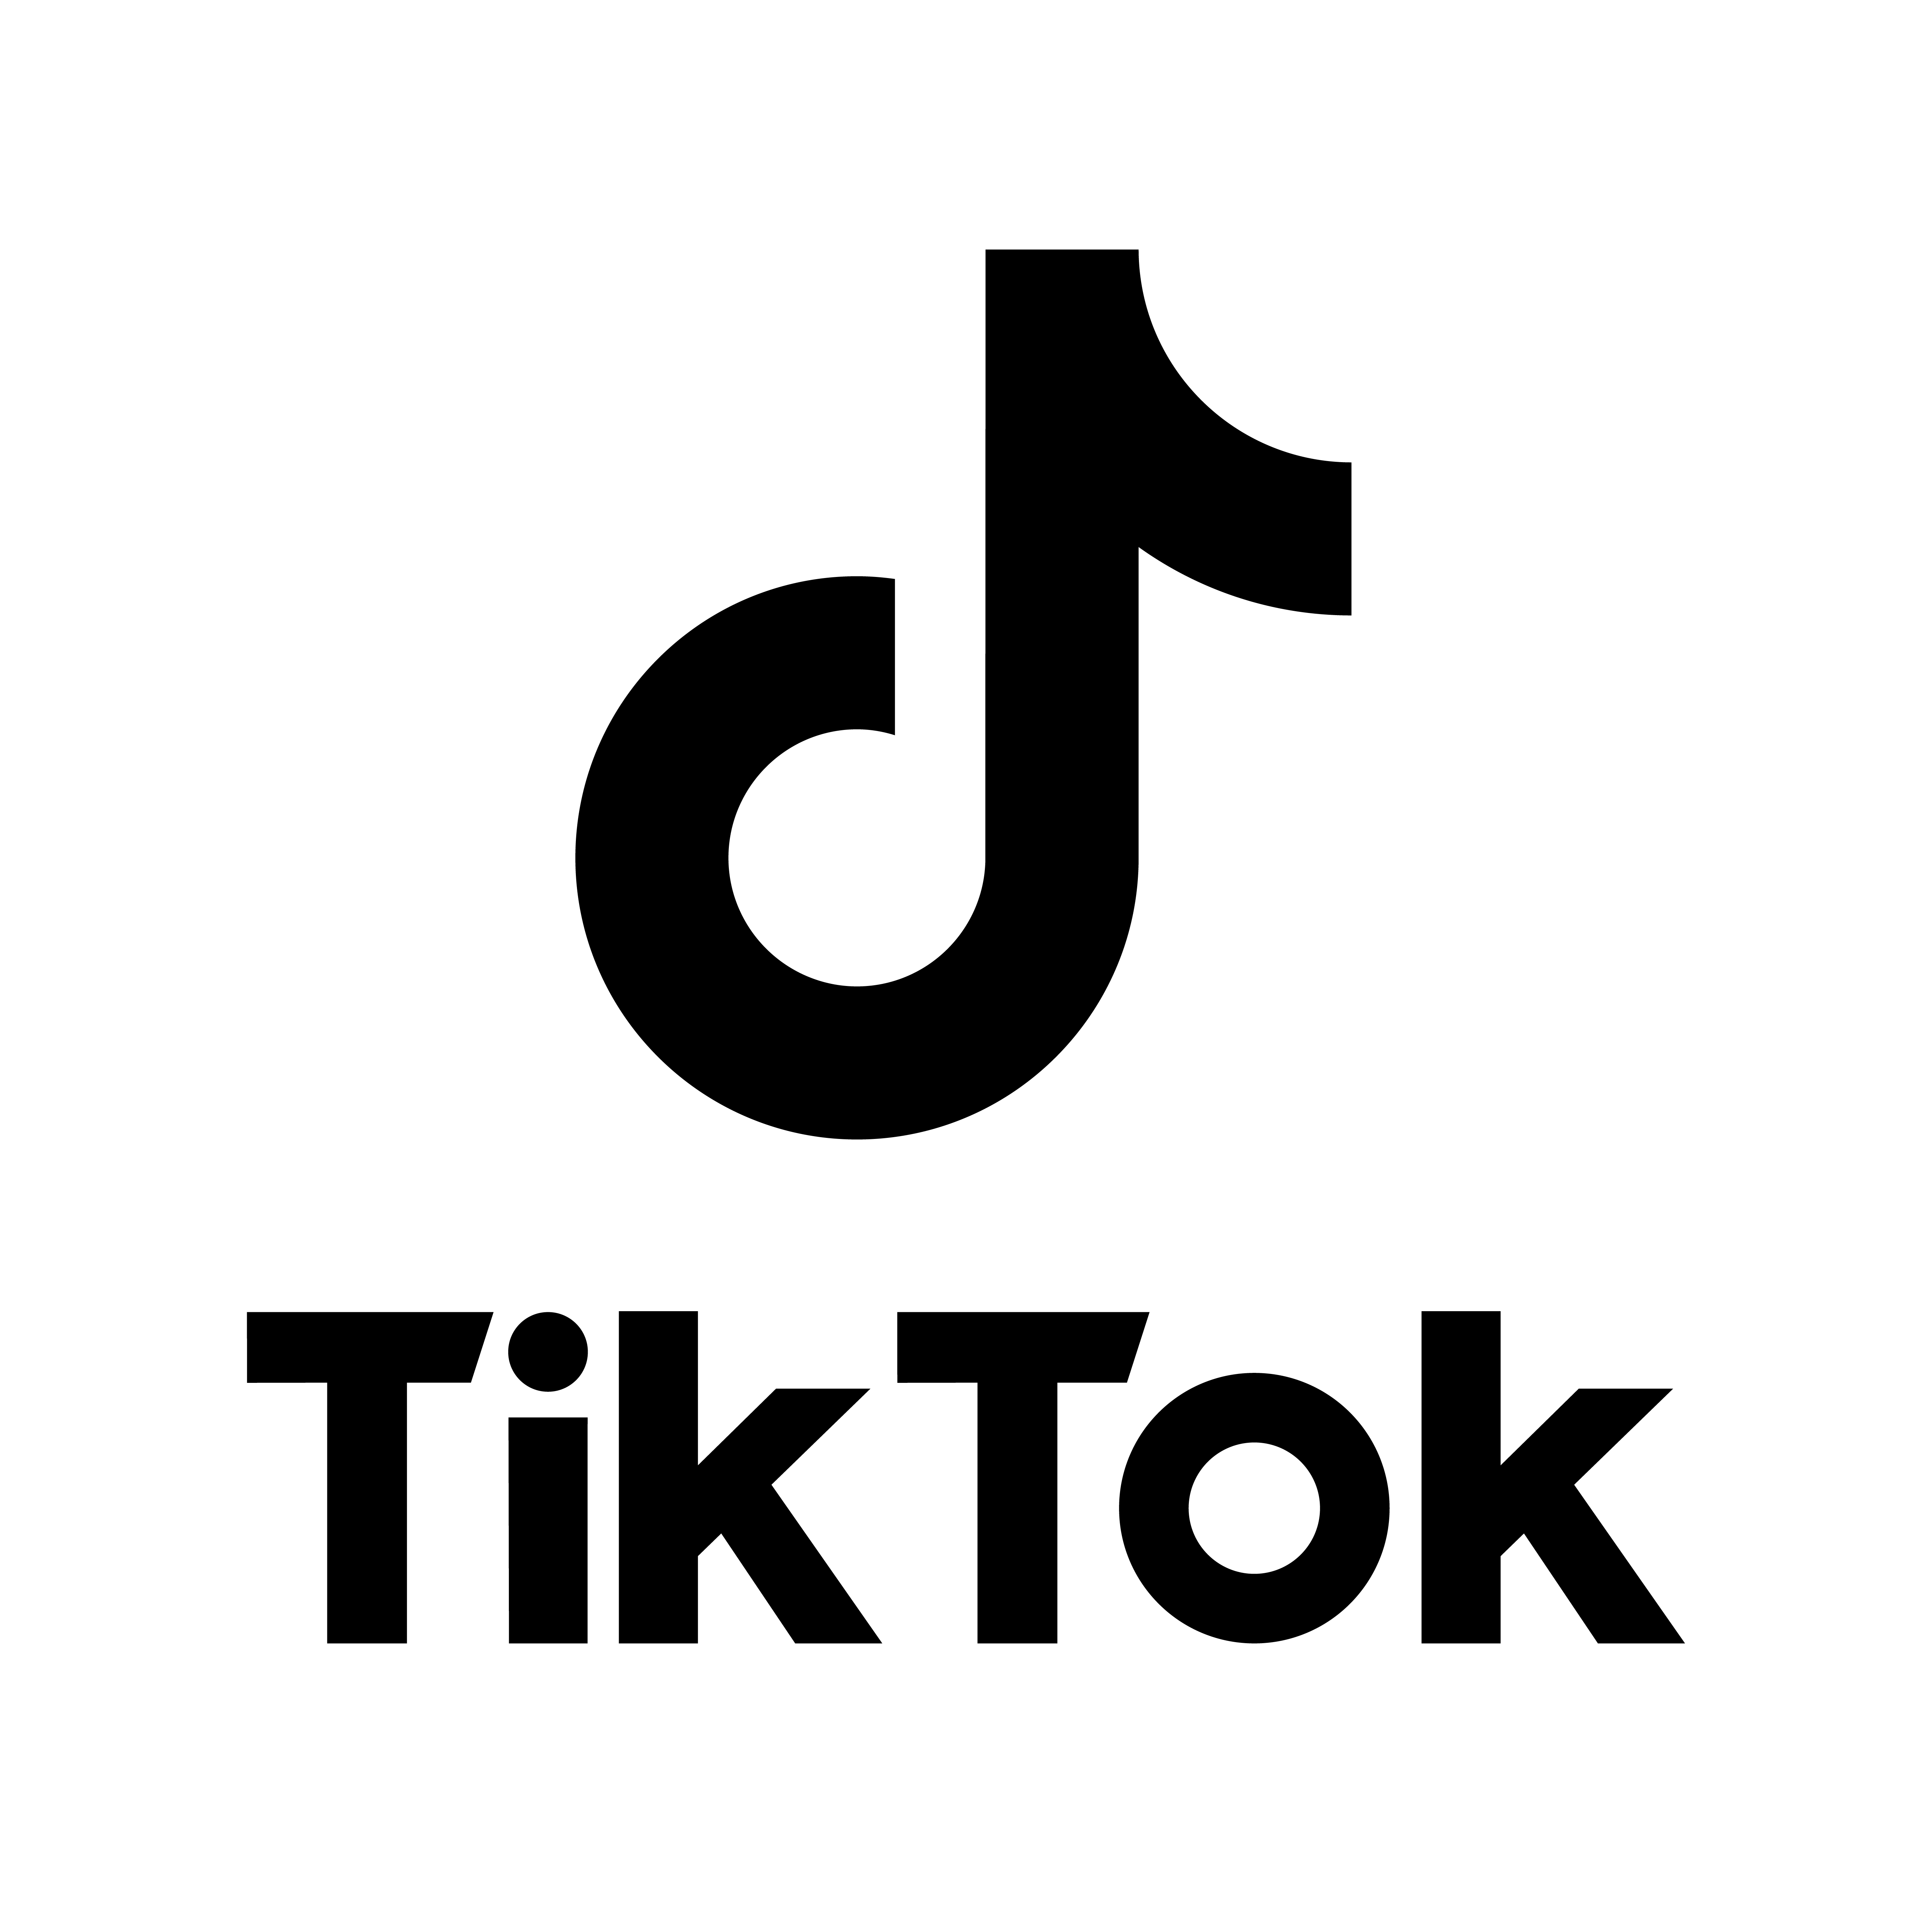 TikTok-logo-CMYK-Stacked-Black-Simplified-(1).png